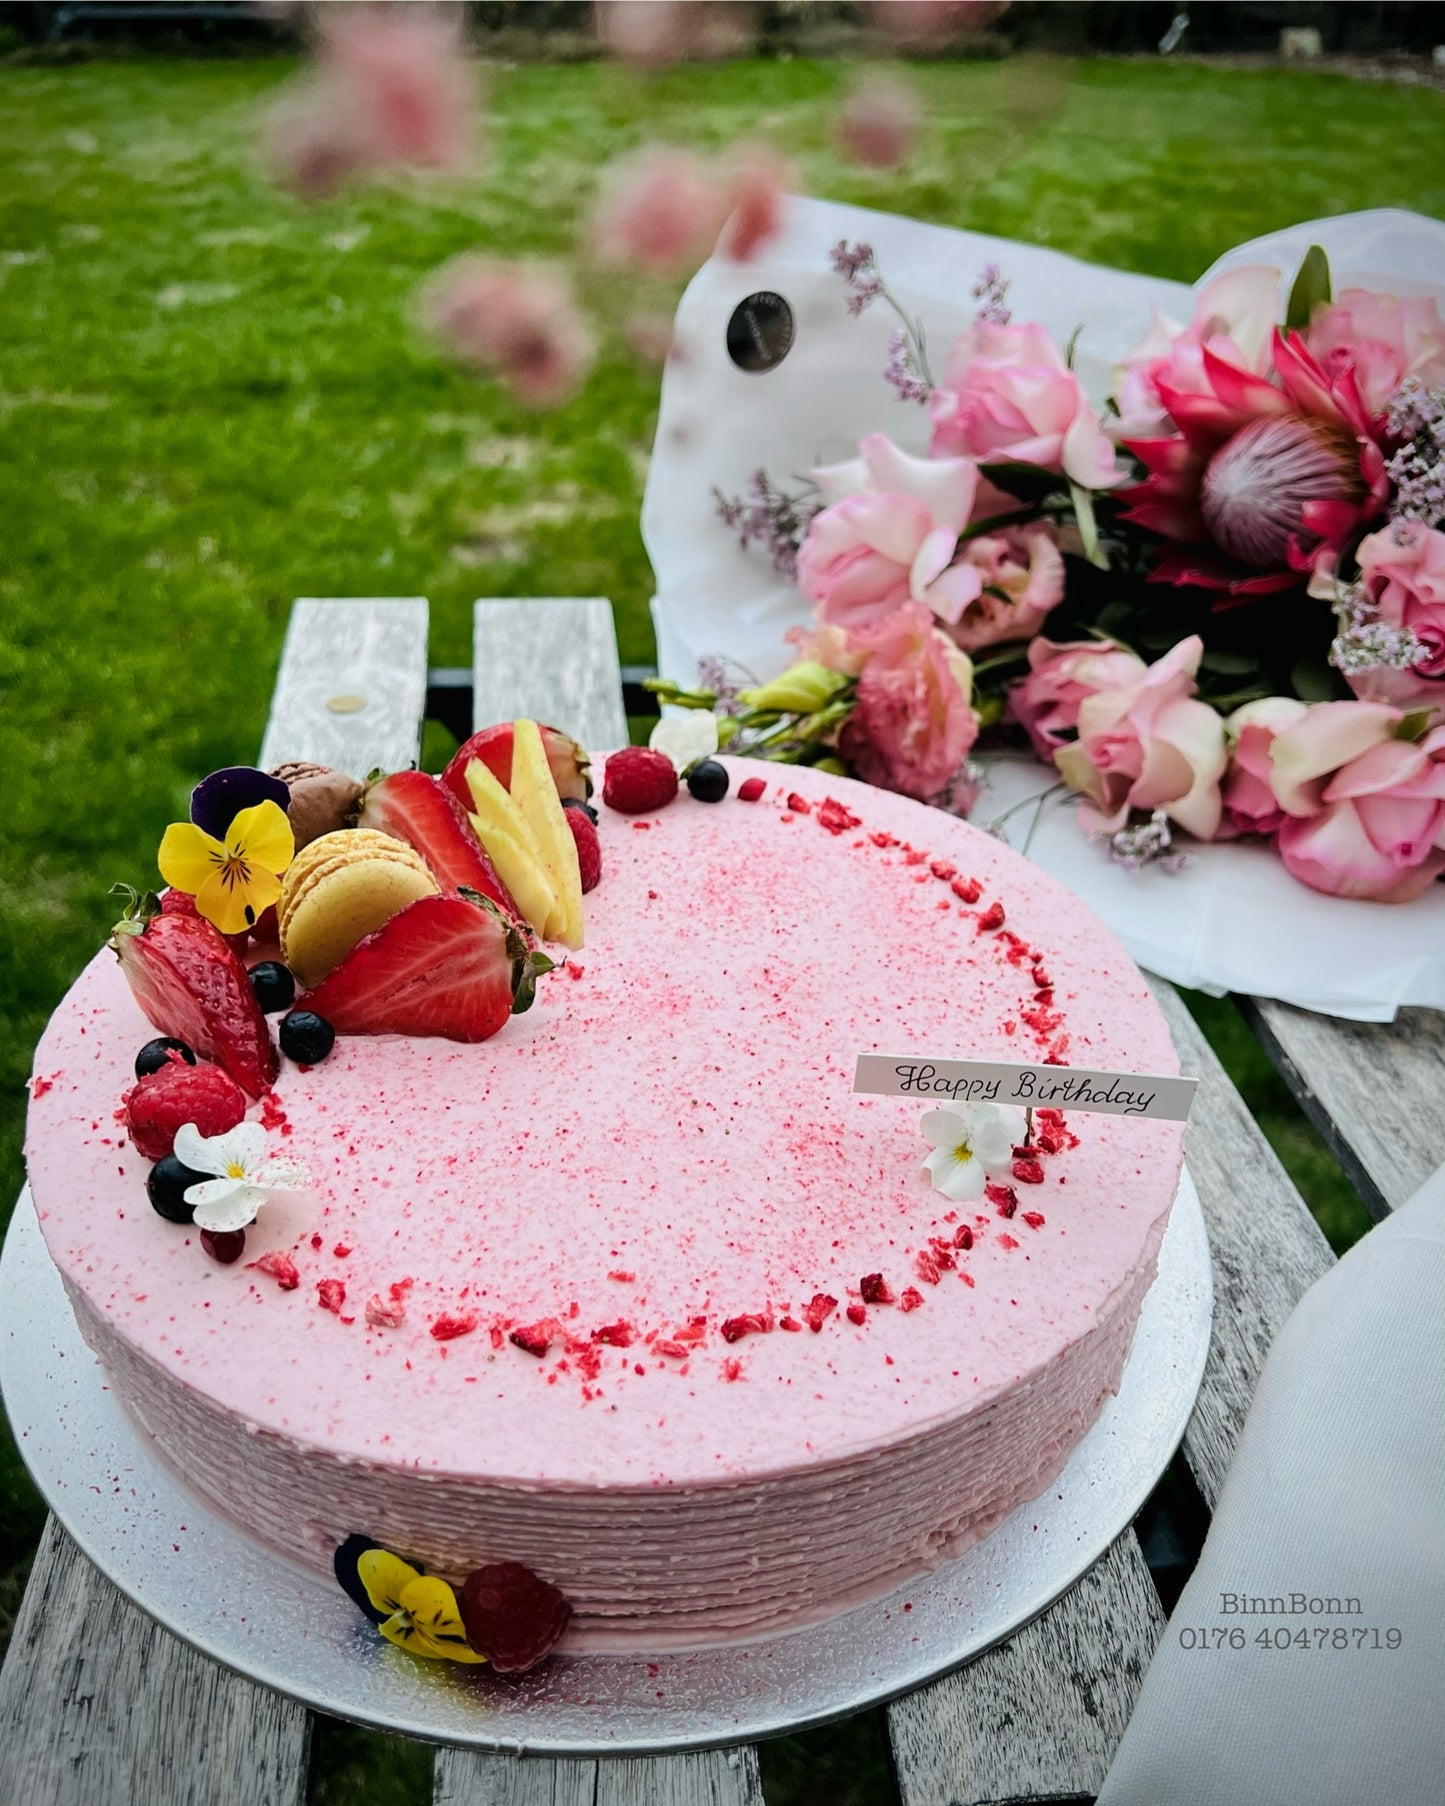 33. Torte "Strawberry Kiss" mit Erdbeer-Joghurt-Mascarponecreme und frischen Beeren 26 cm